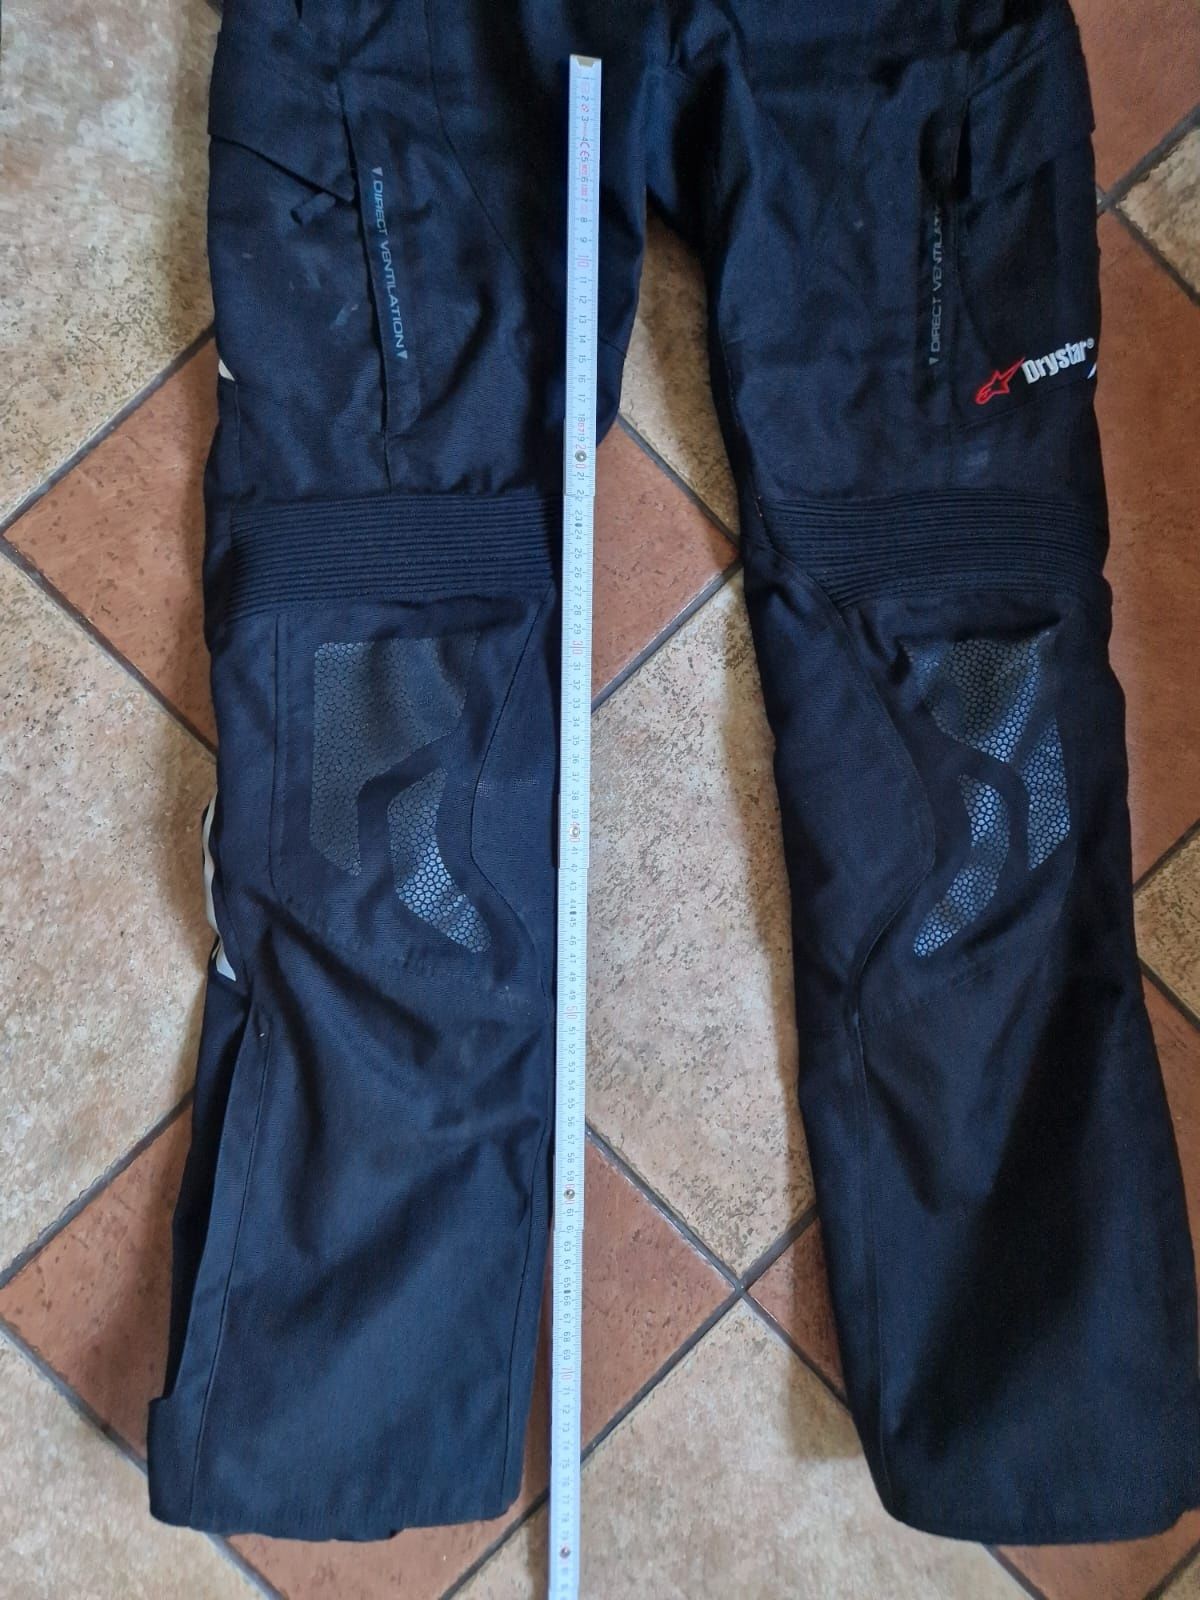 Damskie spodnie Alpinestars, Stella Andes V2 drystar , rozm. S